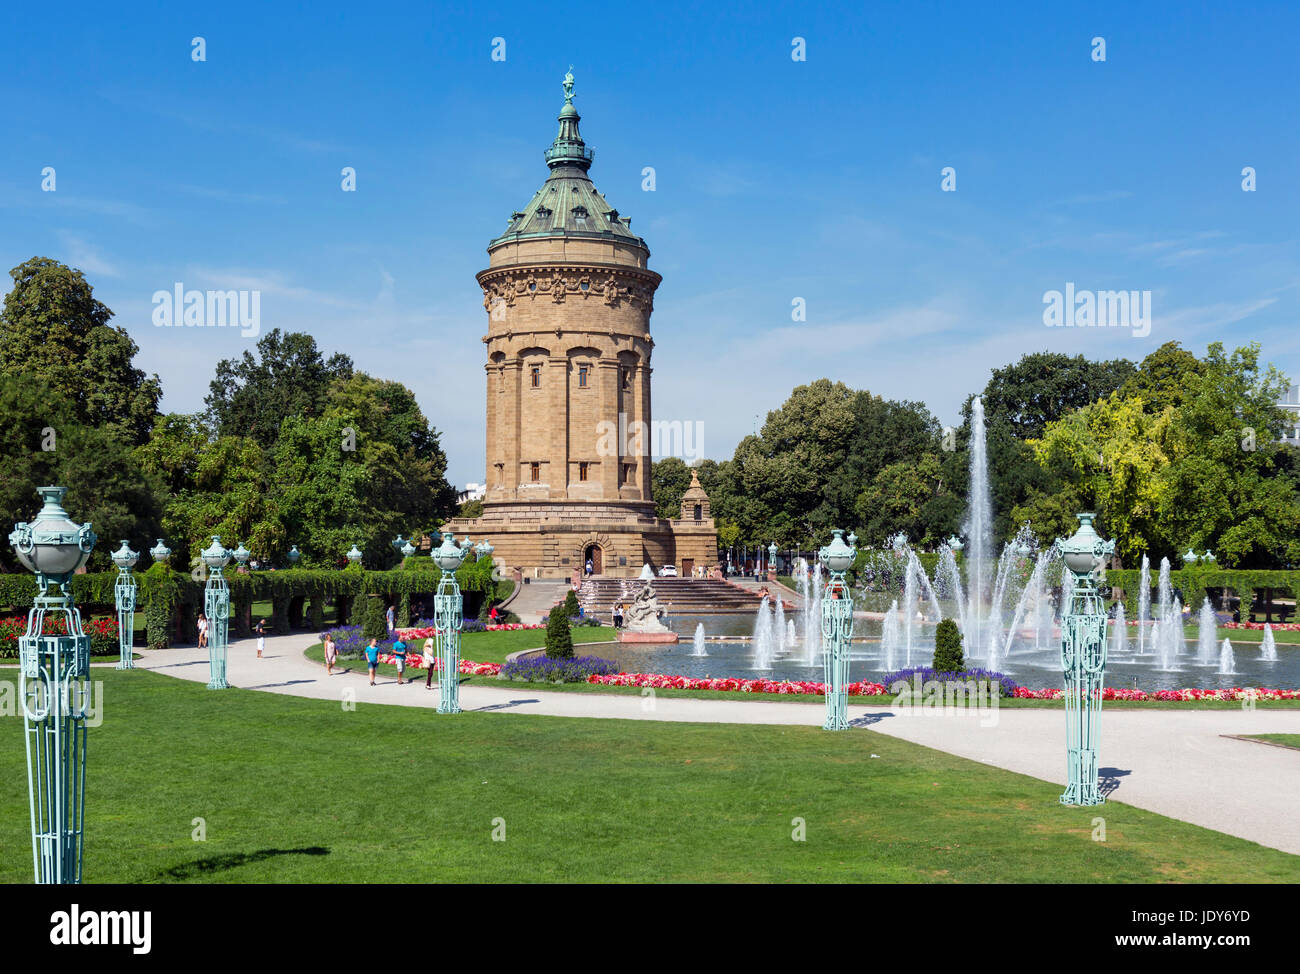 Du Wasserturm (Château d'eau), Friedrichsplatz, Mannheim, Bade-Wurtemberg, Allemagne Banque D'Images